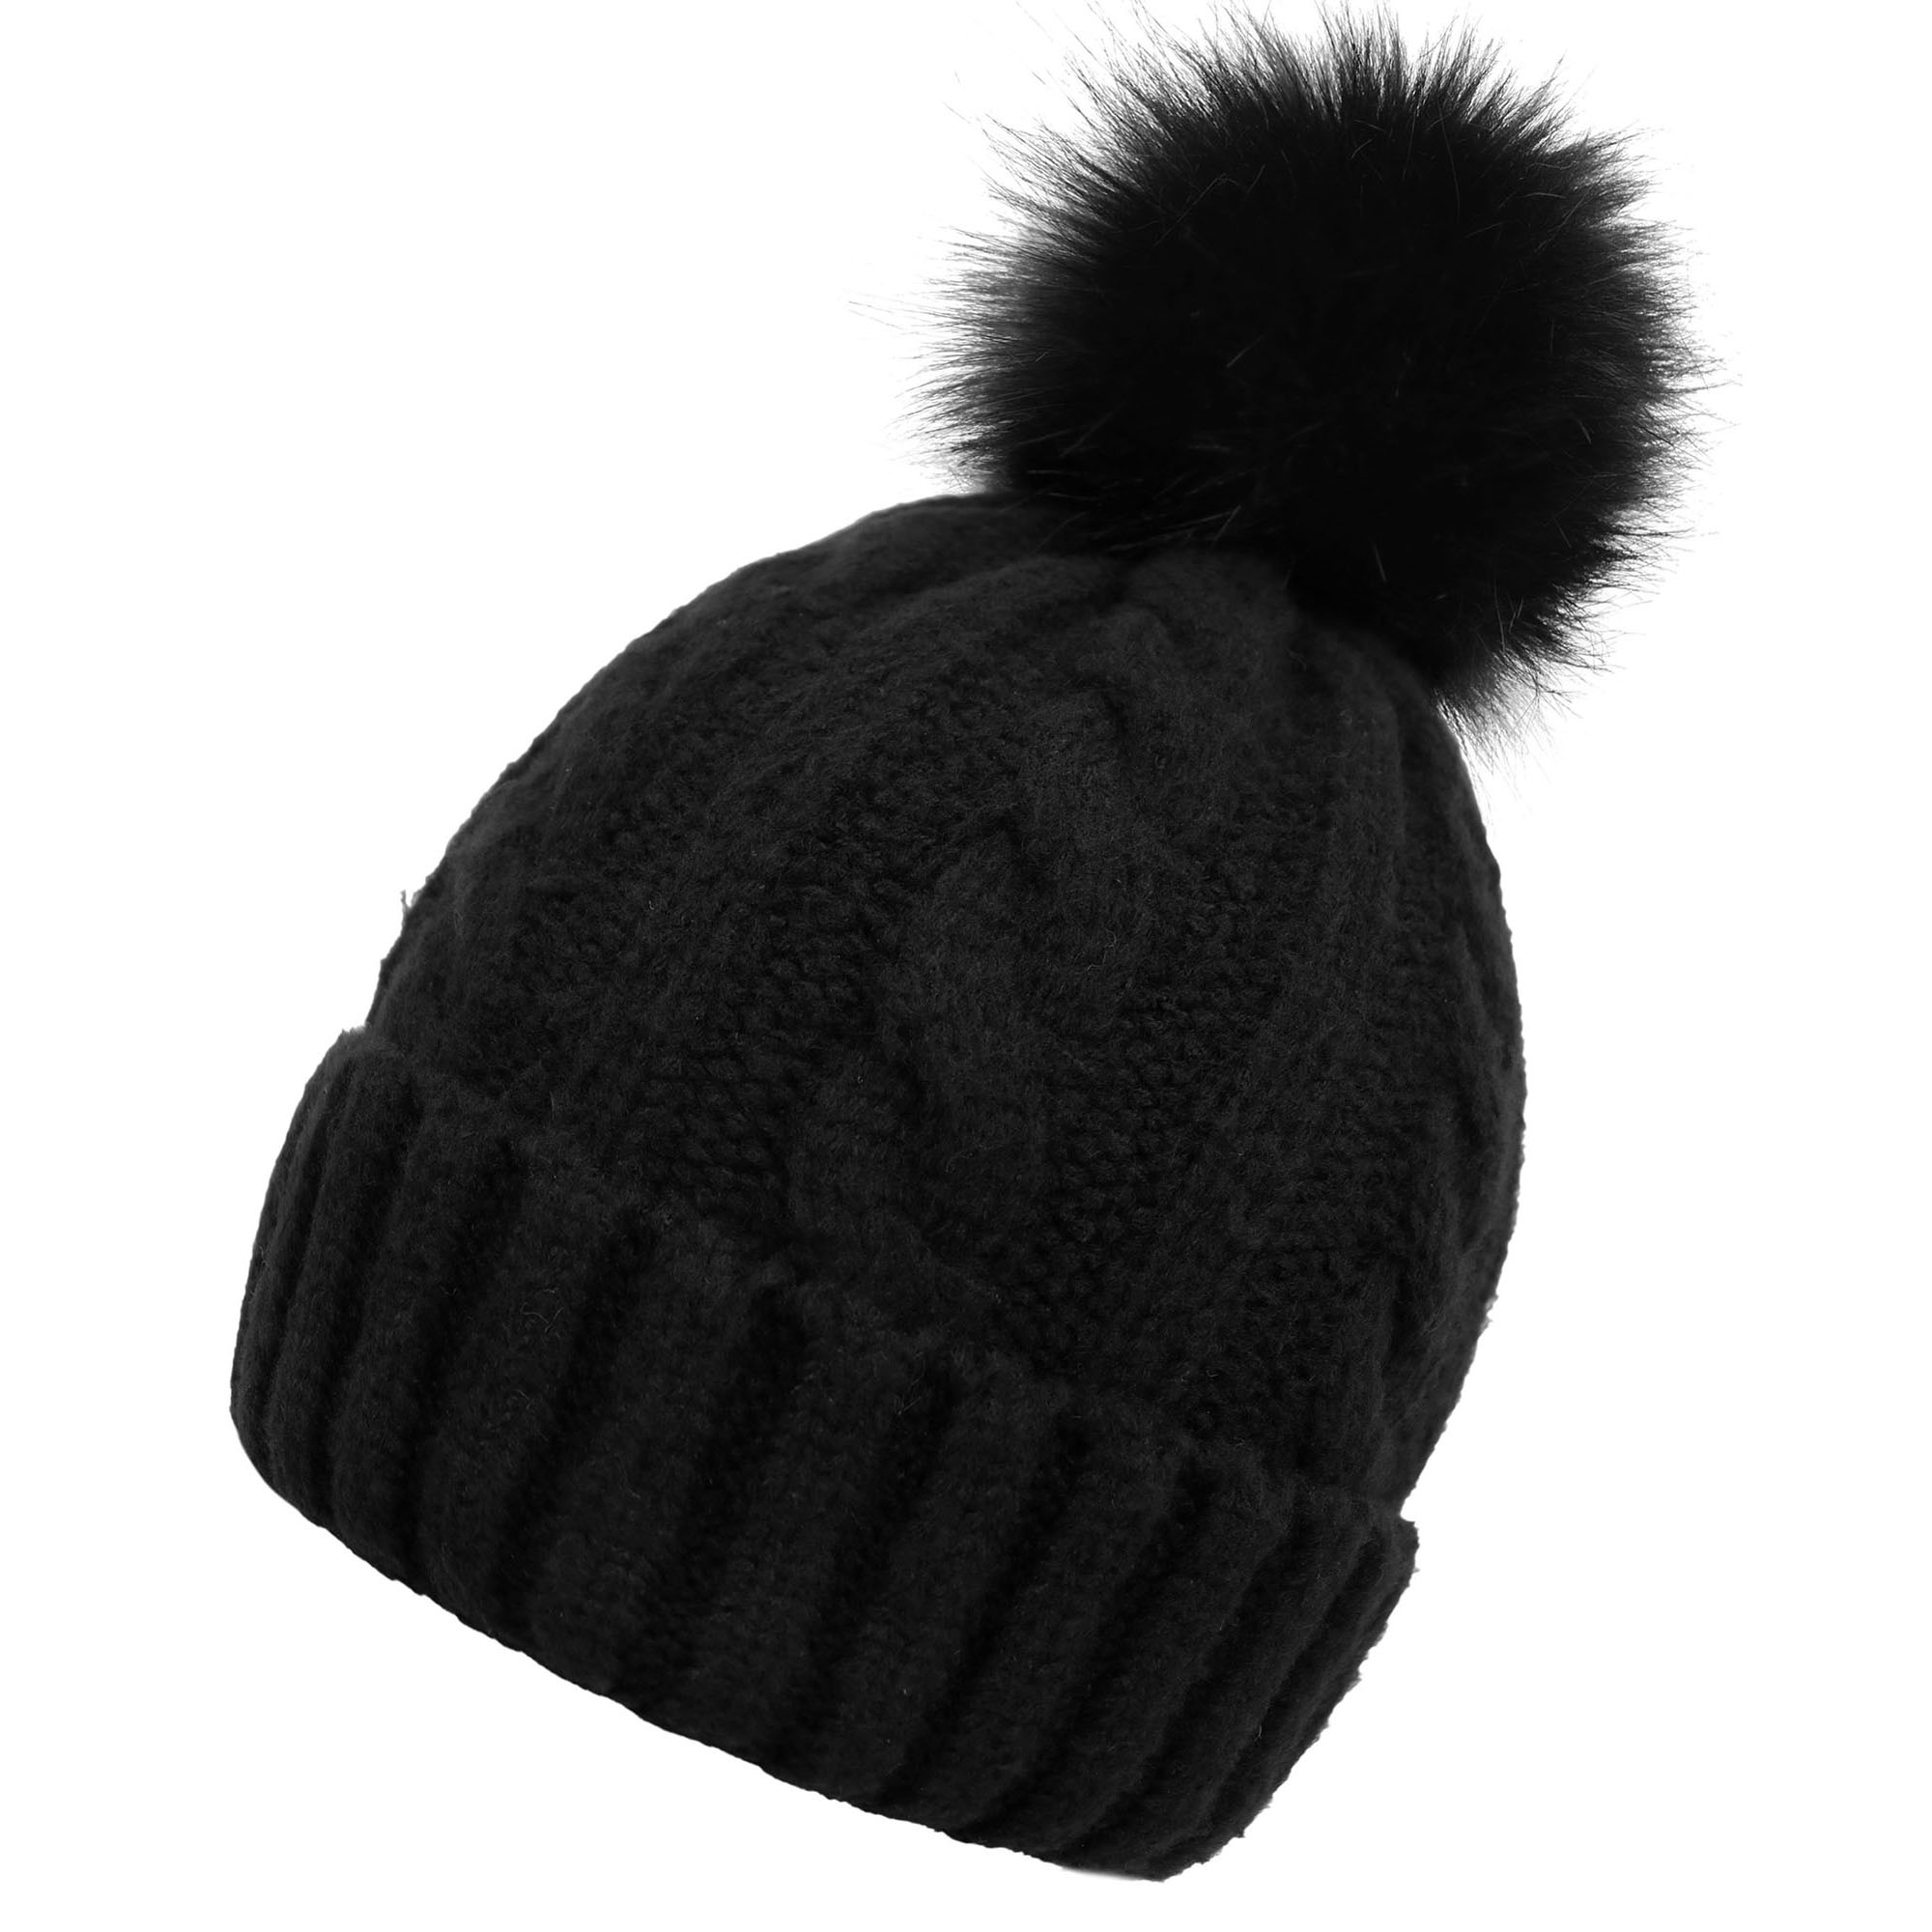 Winter Hat Beanie for Women Knit Slouchy Ski Hat Faux Fur Beanies Pompom, Black Beanie, Black pom Beanie - image 2 of 4